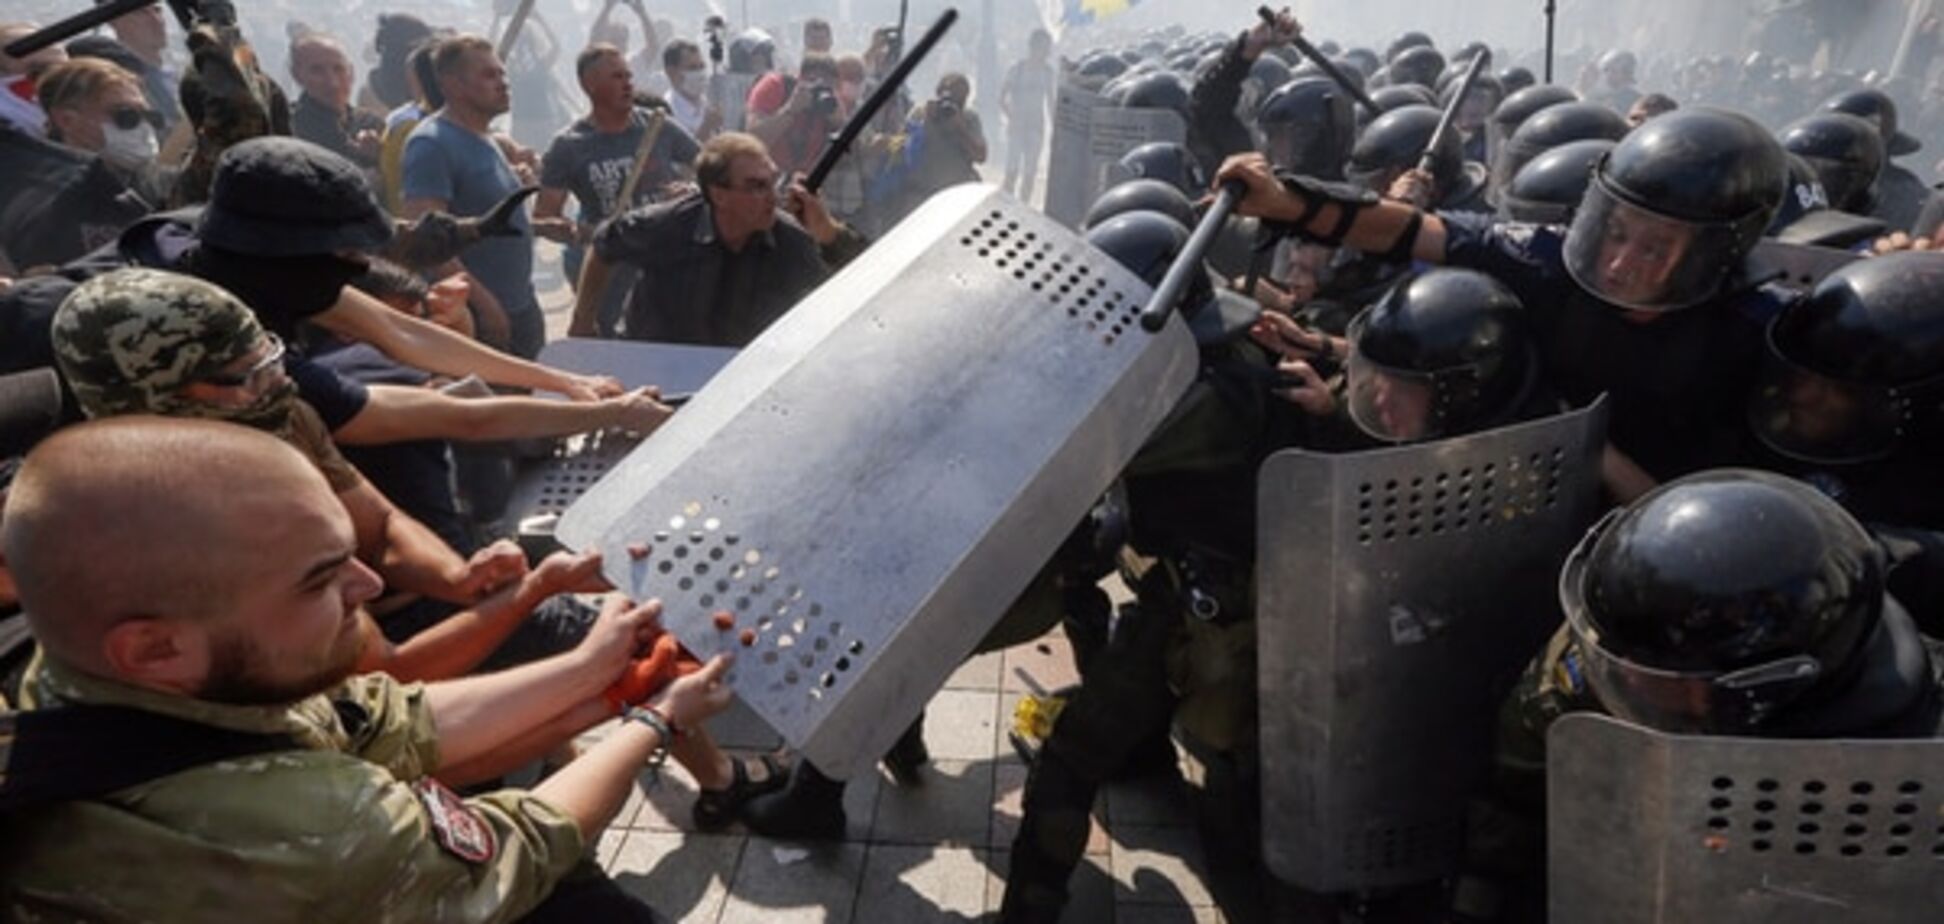 Бойня под Радой пошатнула международную репутацию Украины - нардеп